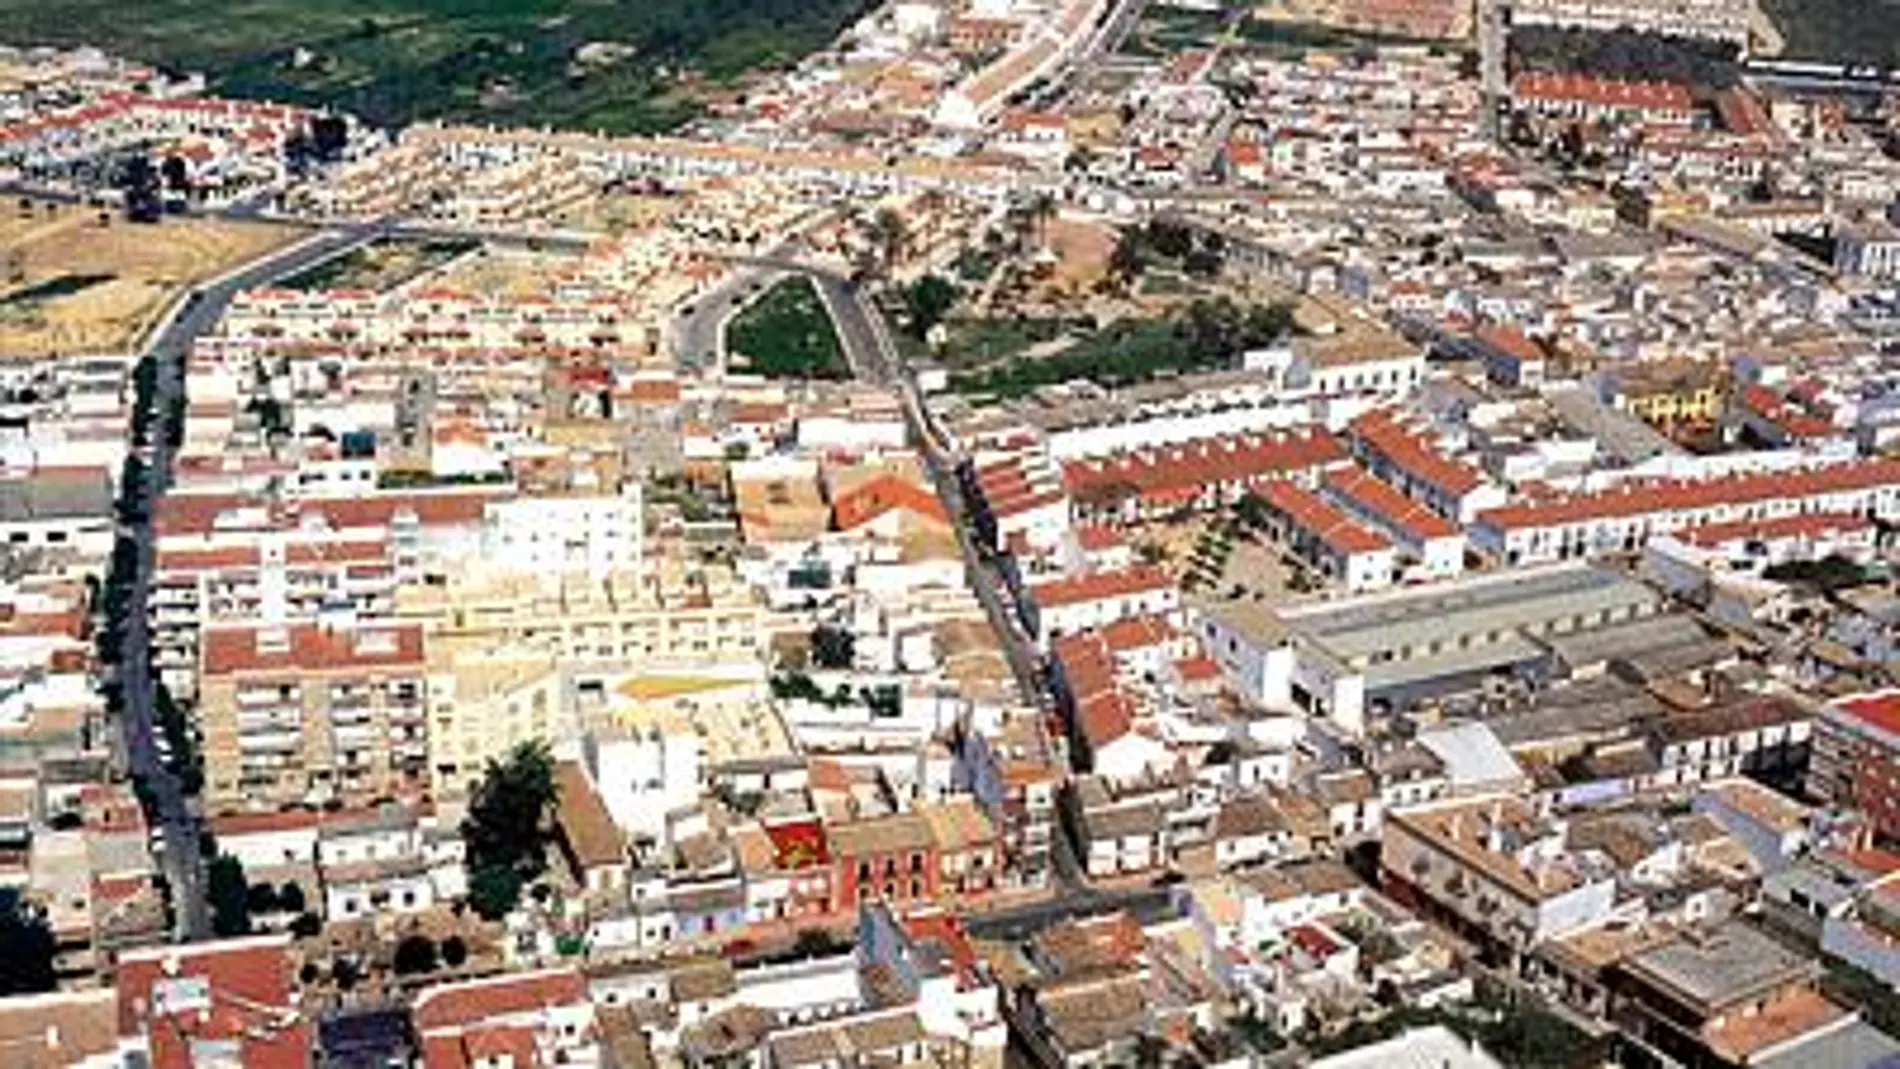 Vista aérea de Castilleja de la Cuesta, municipio sevillano en el que han ocurrido los hechos